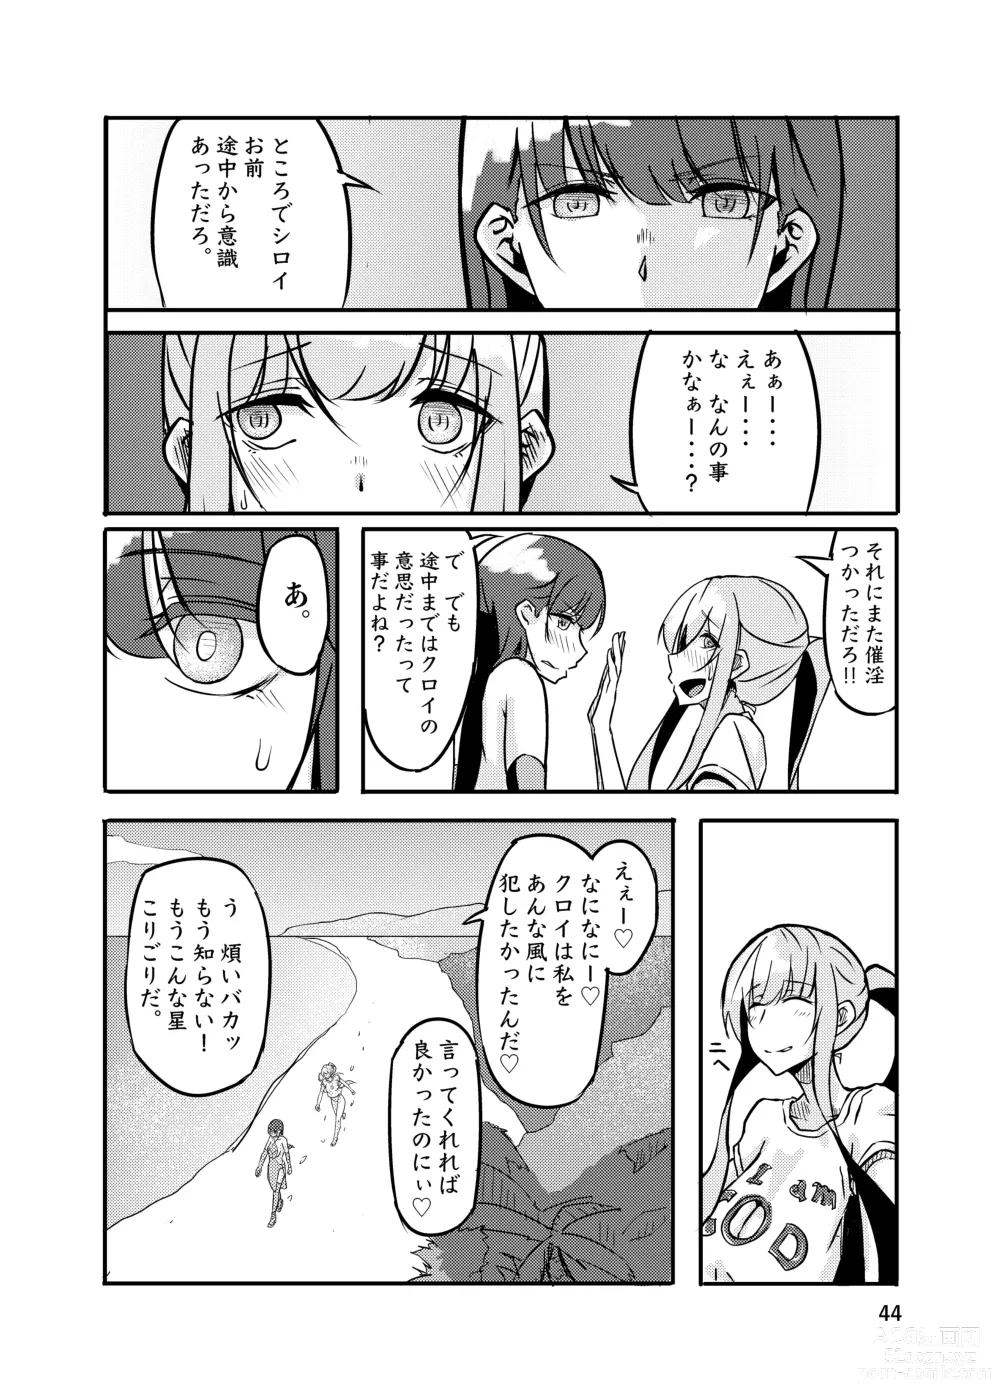 Page 44 of doujinshi 800-man Hiki no Kami-sama.